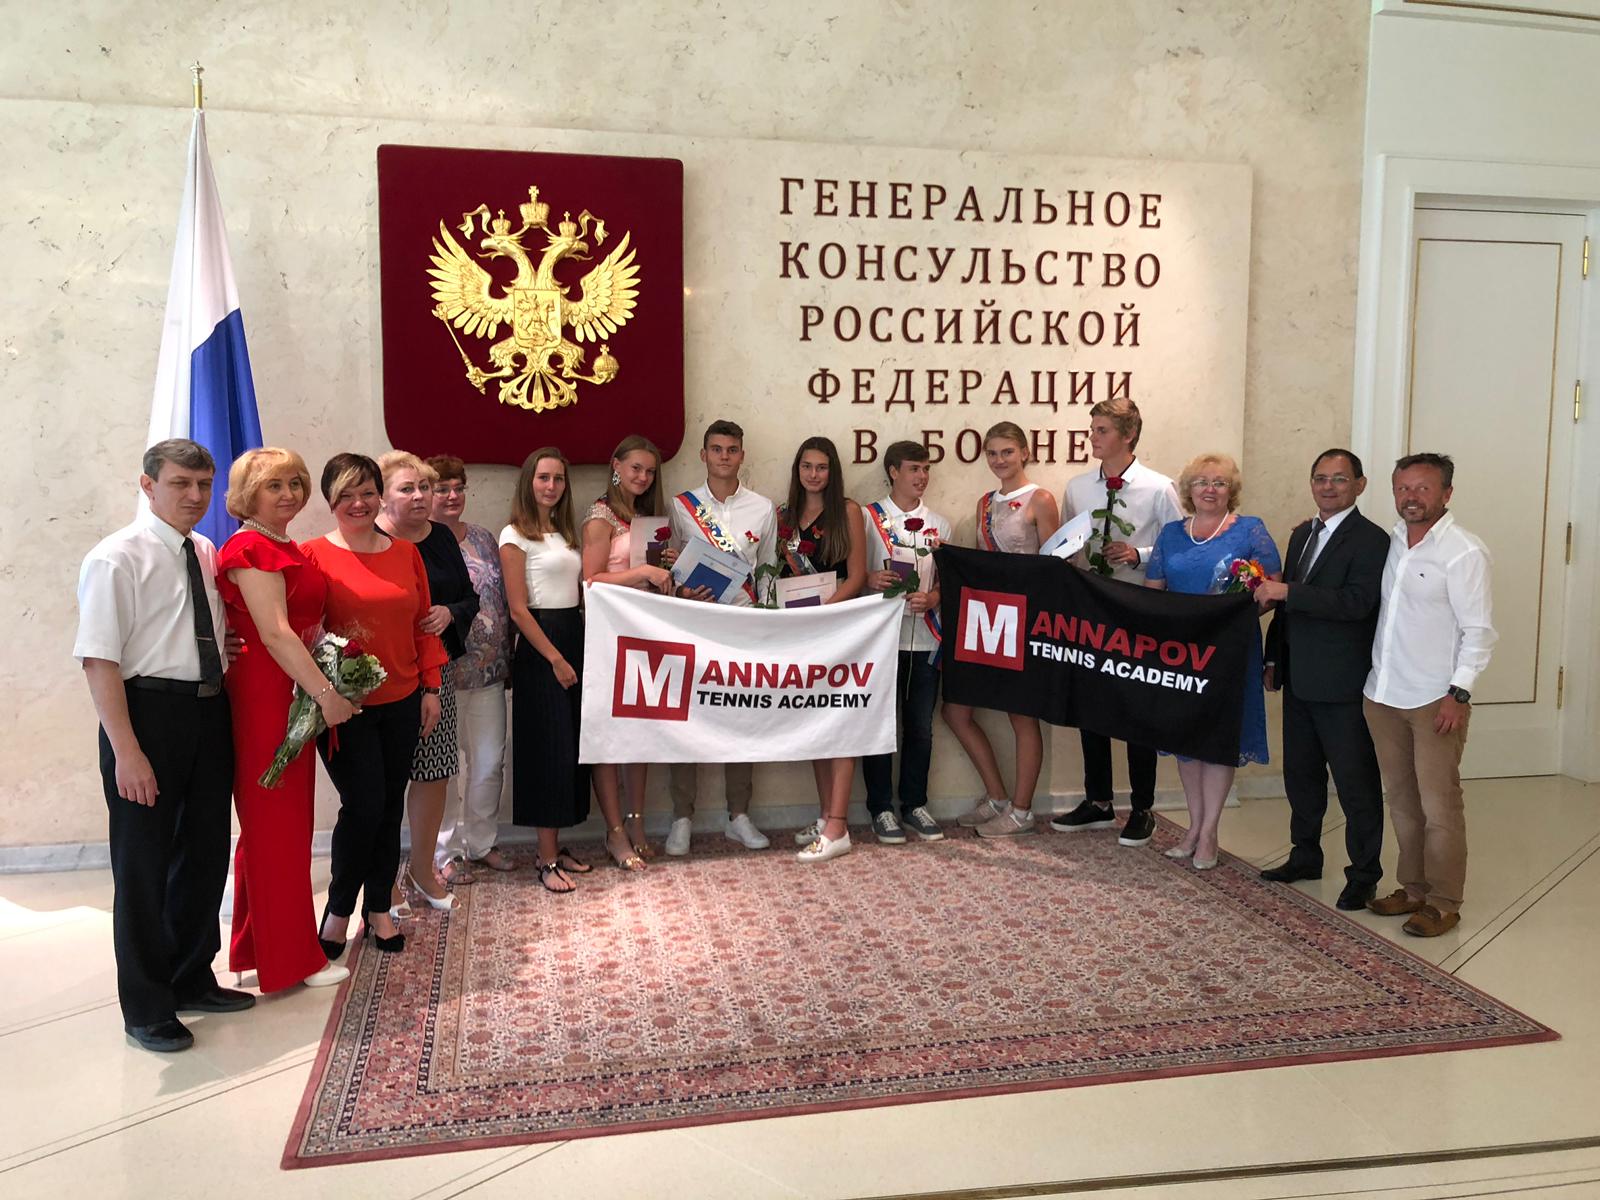  Конец учебного года! Наши выпускники - наша гордость! Благодарим школу при Генеральном консульстве России.